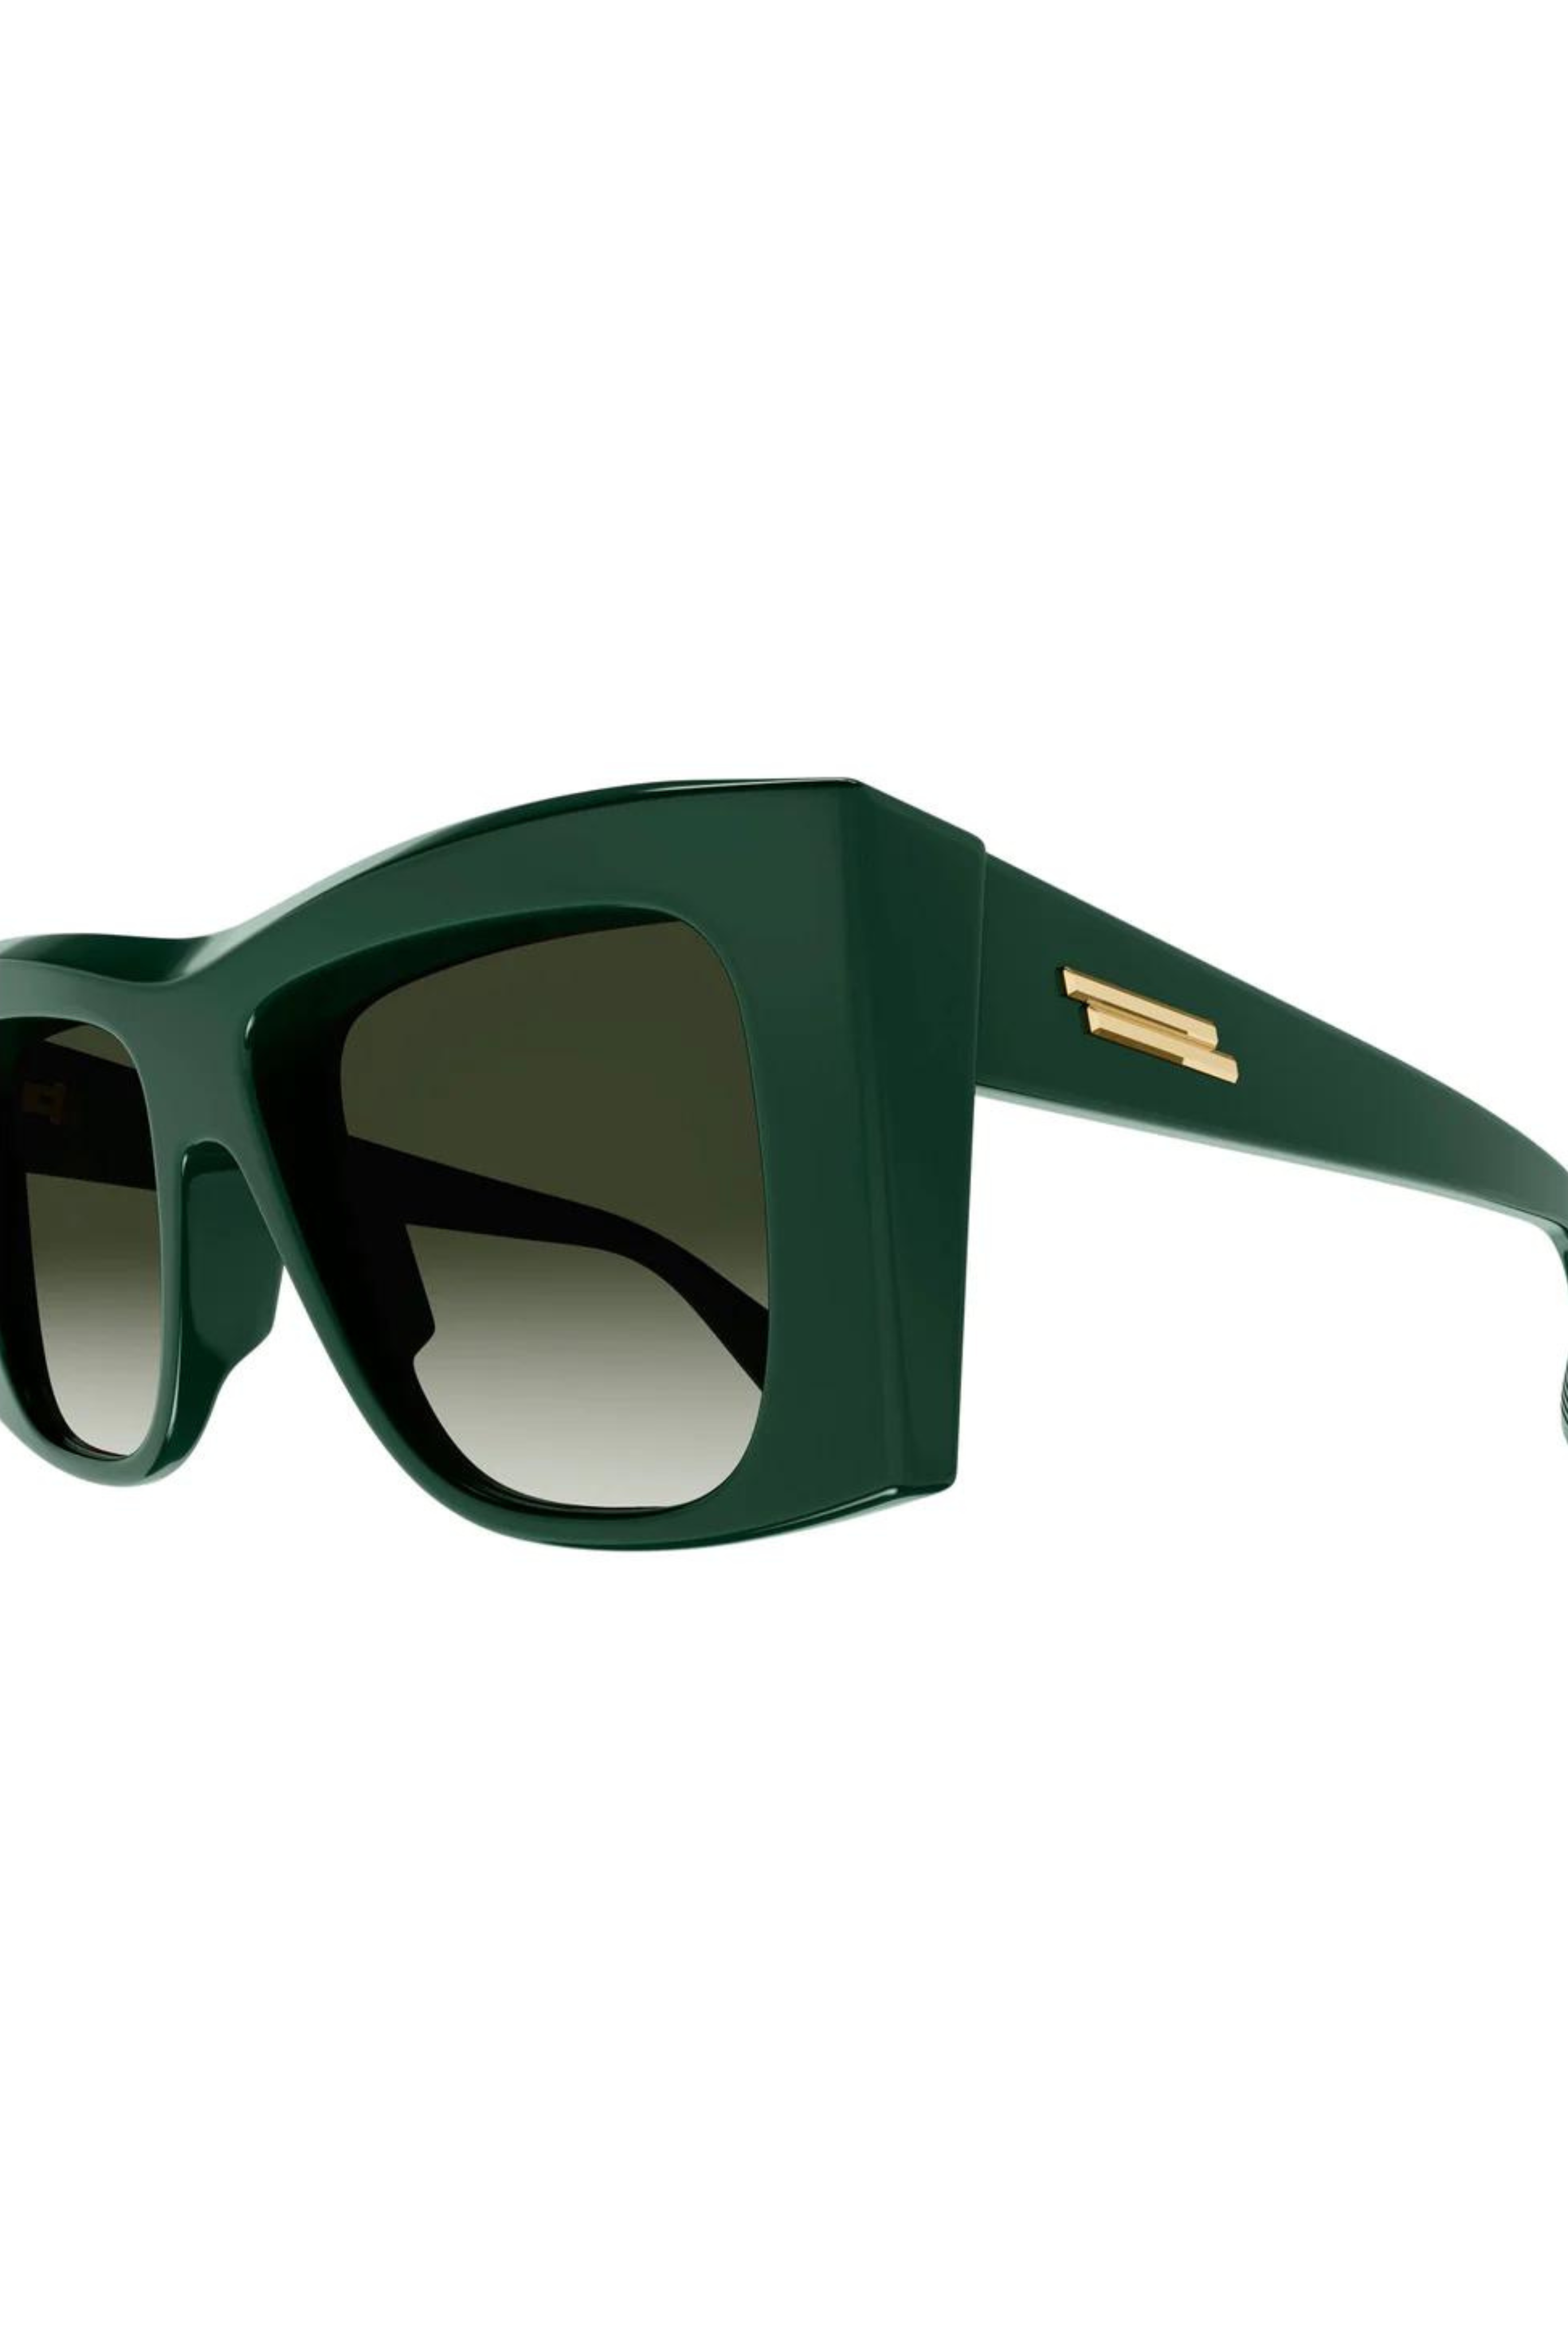 Bottega Veneta Oversize Square Sunglasses